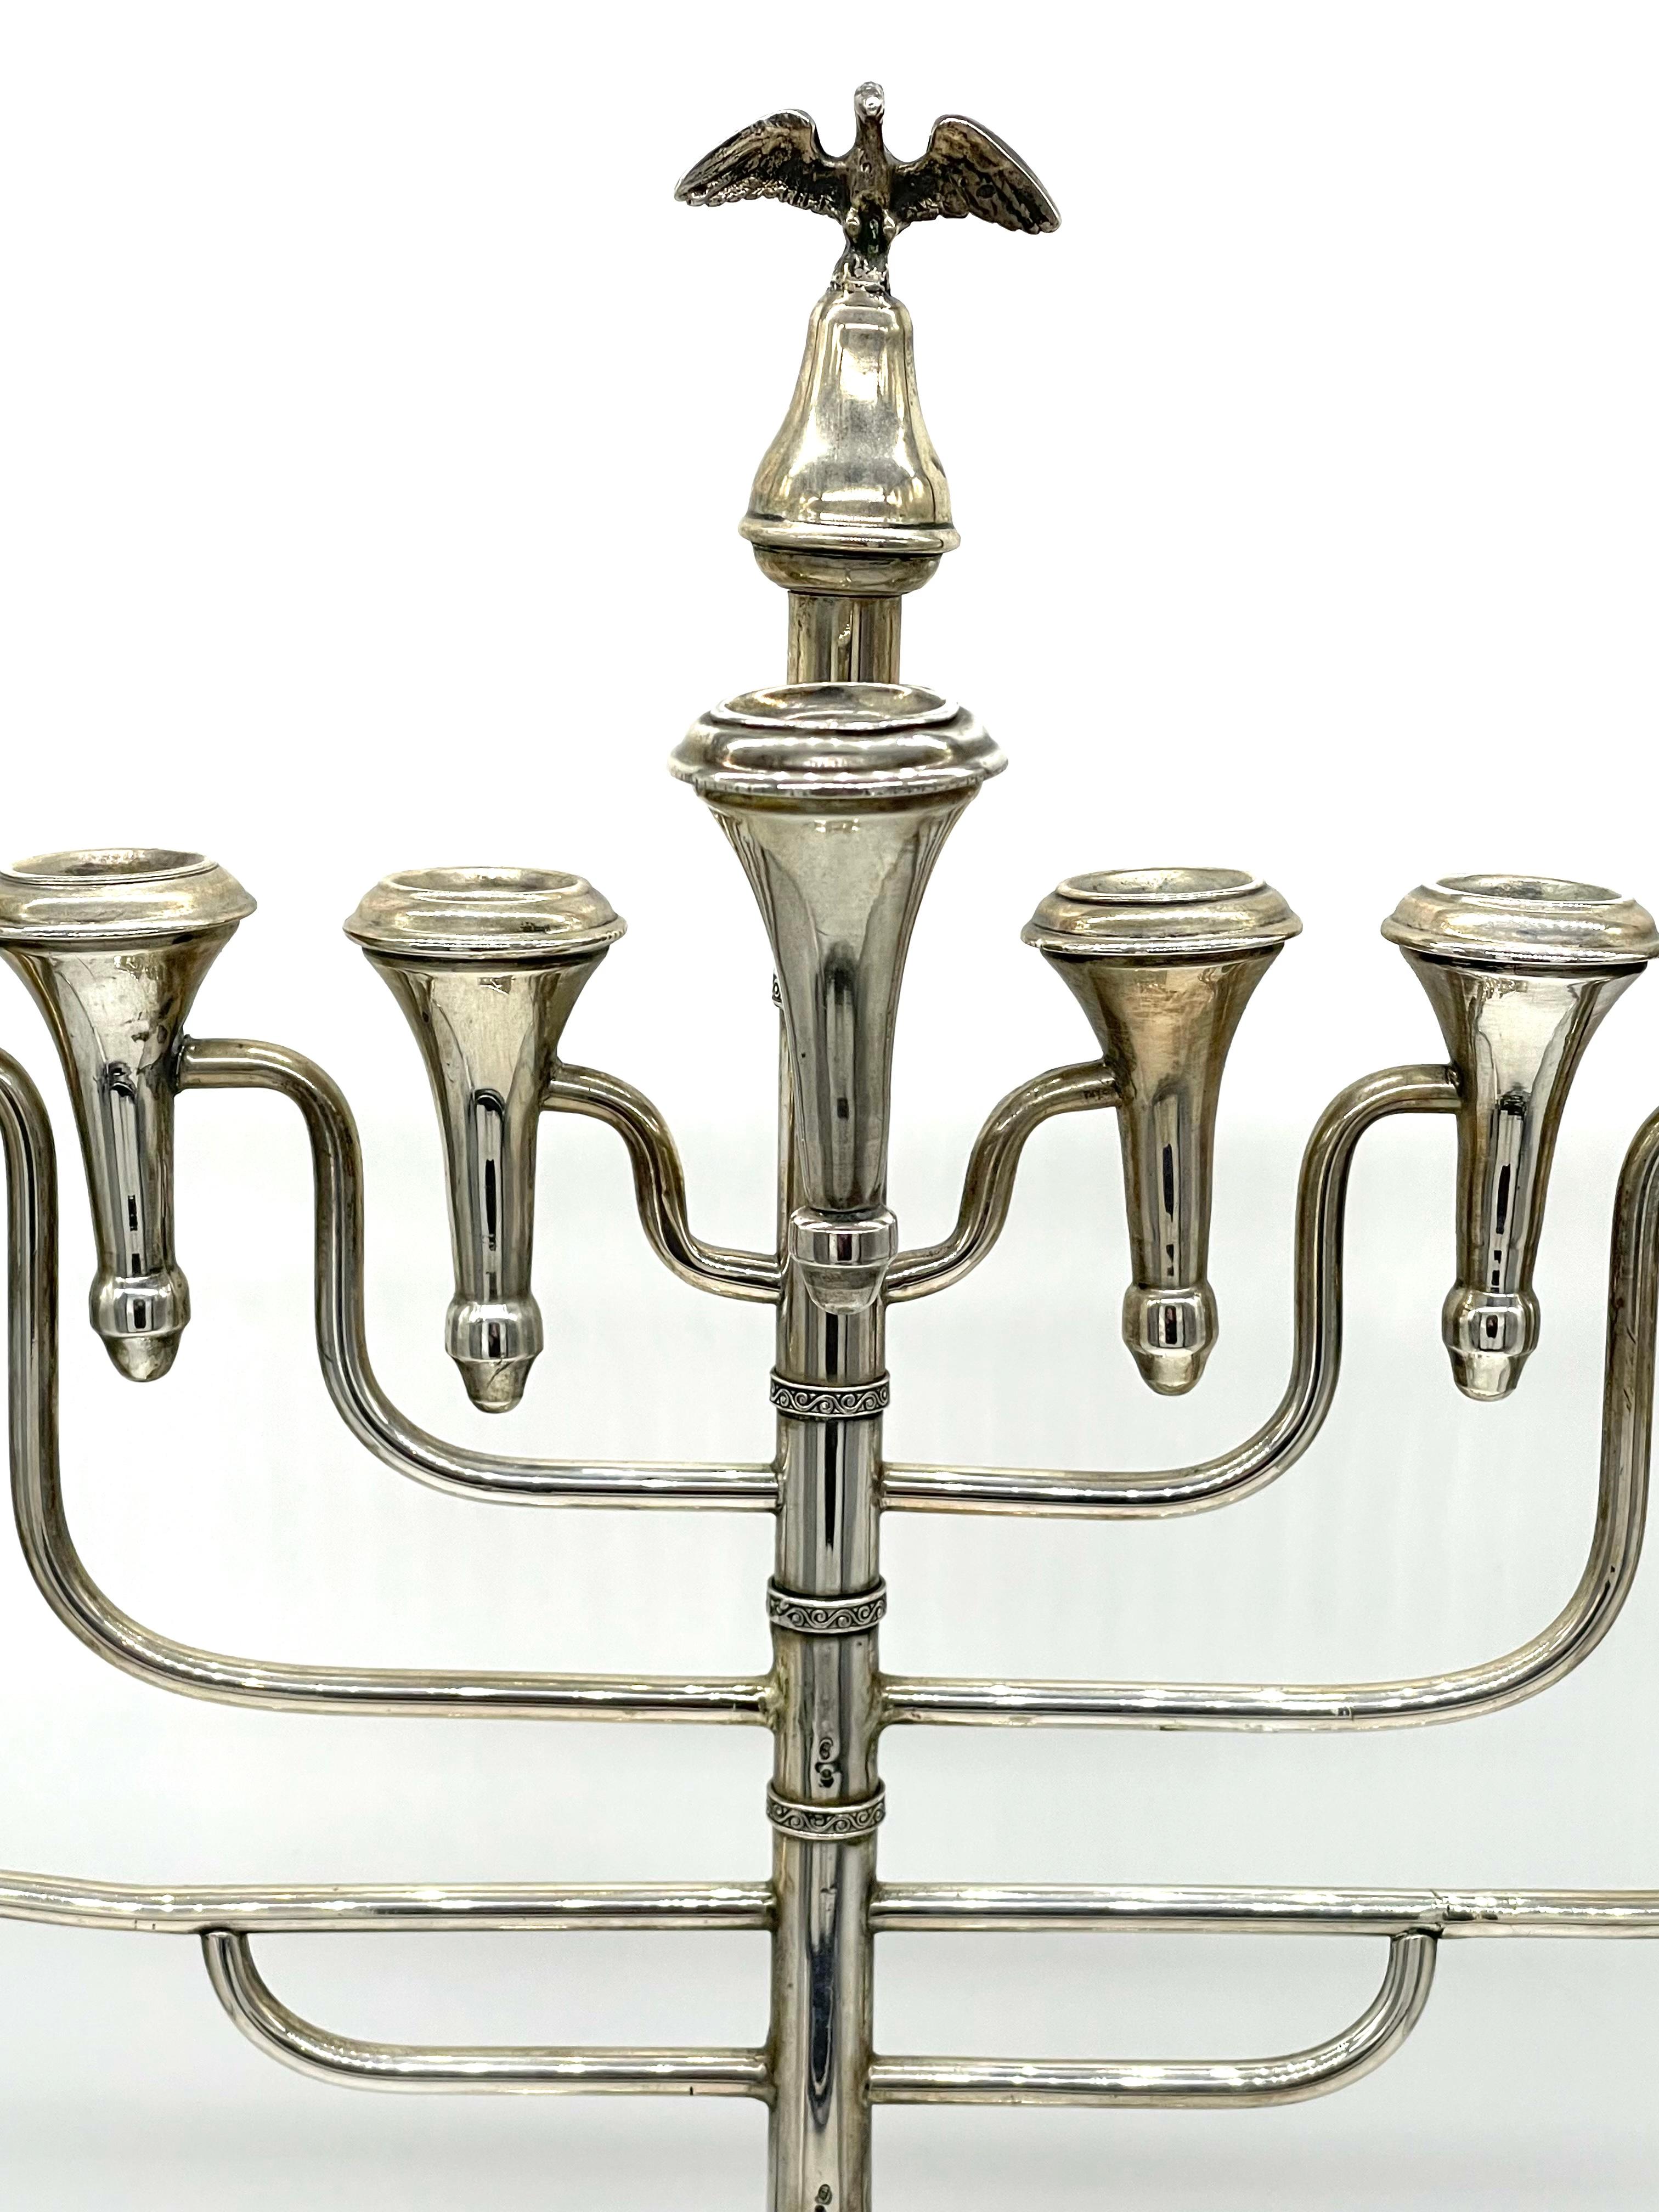 Monumentale Chanukka-Lampe aus Silber aus dem frühen 20. Jahrhundert, hergestellt in Polen. Die im Art-Deco-Stil gestaltete Leuchte ist am Sockel mit floralen Motiven verziert, während sich an der Spitze der zentralen, tragenden Säule eine